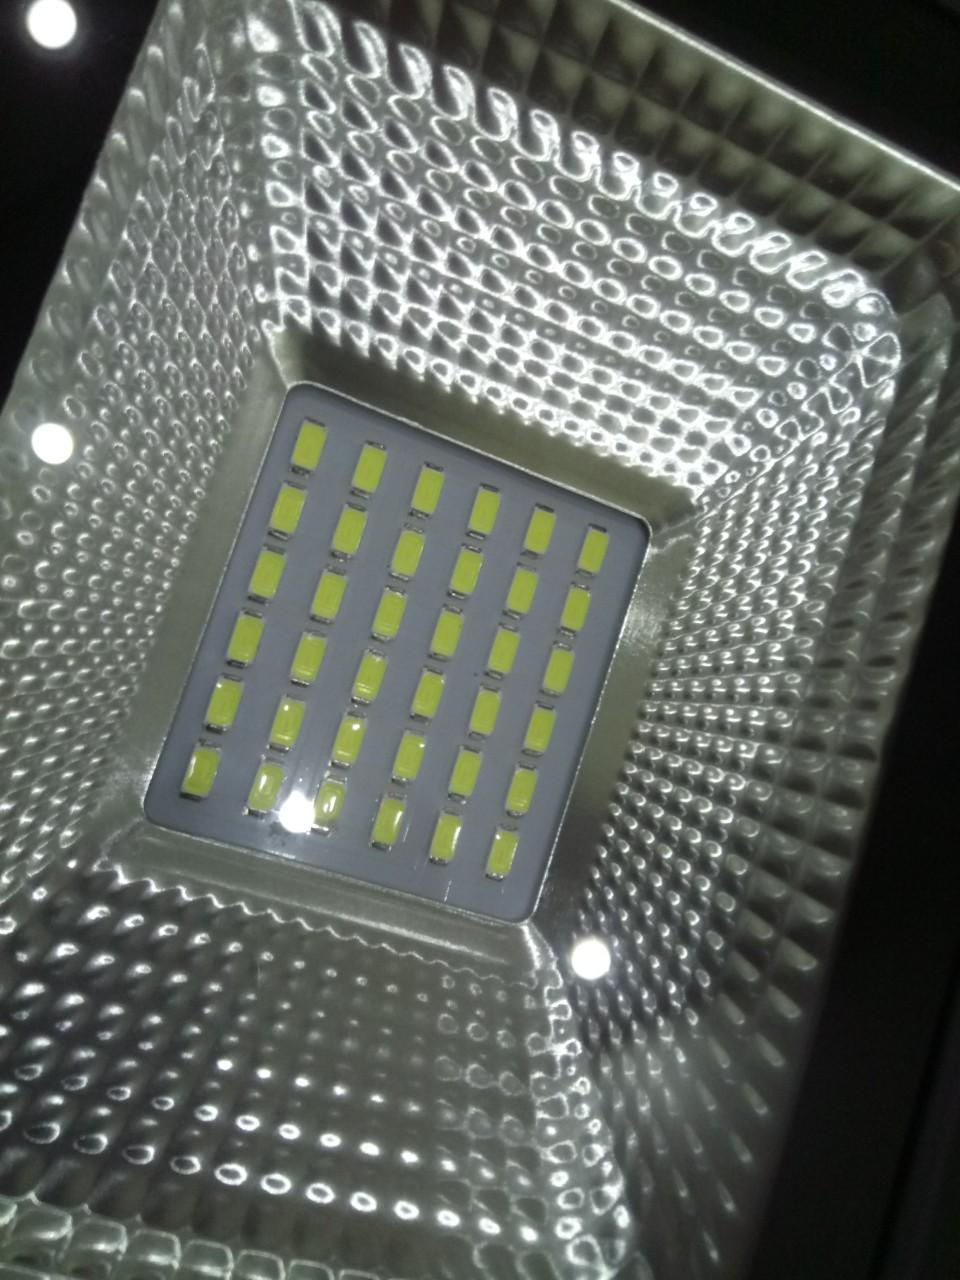 Đèn Pha Led IP66 Siêu mỏng, siêu sáng 30W (Ánh Sáng Trắng)